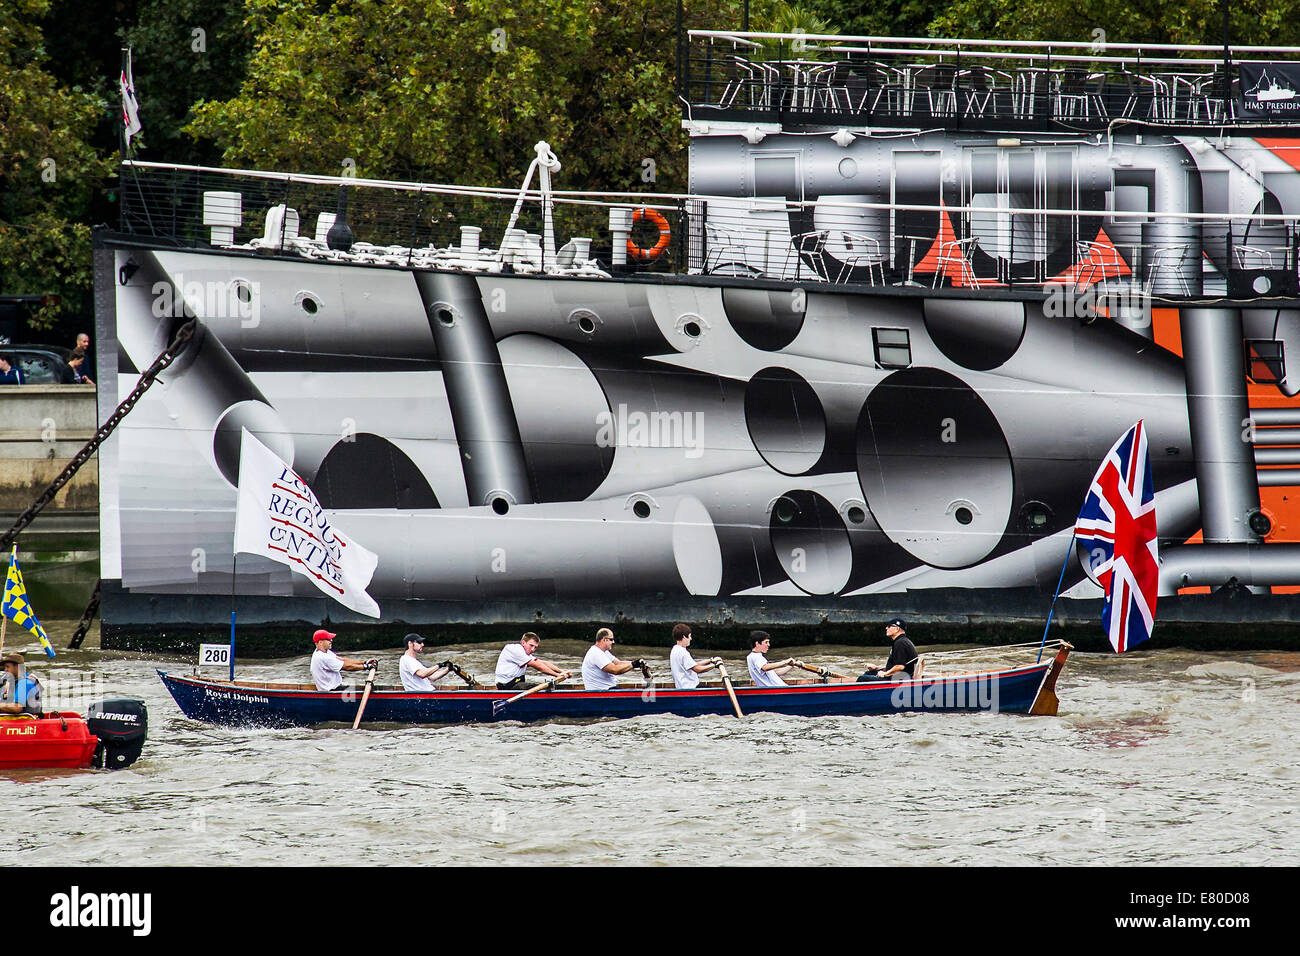 Col bateau HMS Président qui a été peint en 'Dazzle' de la peinture de camouflage en commémoration de la PREMIÈRE GUERRE MONDIALE, le grand fleuve de la race, London's River Marathon (aussi connu sous le nom de UK bateau traditionnel) - un championnat 21.6 Miles boat race jusqu'à la rivière Thames à partir de London Docklands à Ham à Surrey. Il attire plus de 300 équipages venus du monde entier et fait appel à tous les niveaux de concurrent de ceux qui aiment le plaisir, fantaisie et de charité des cascades, à de graves les sportifs. Tamise, Londres, 27 septembre 2014. Banque D'Images